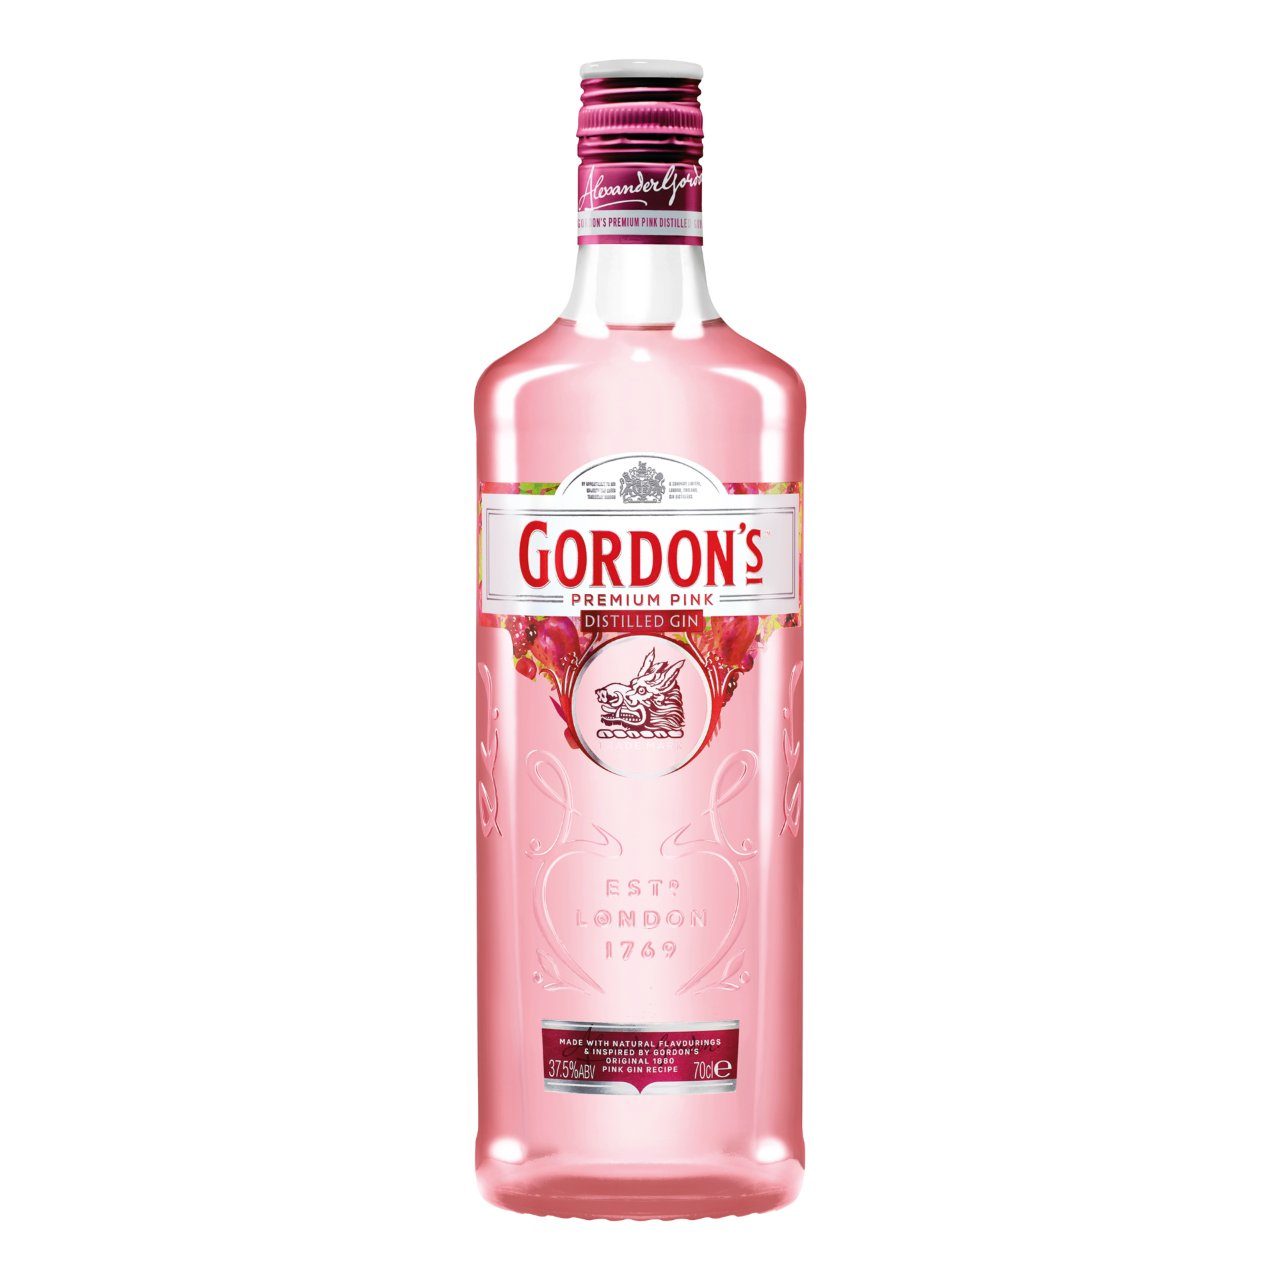 Pink gin